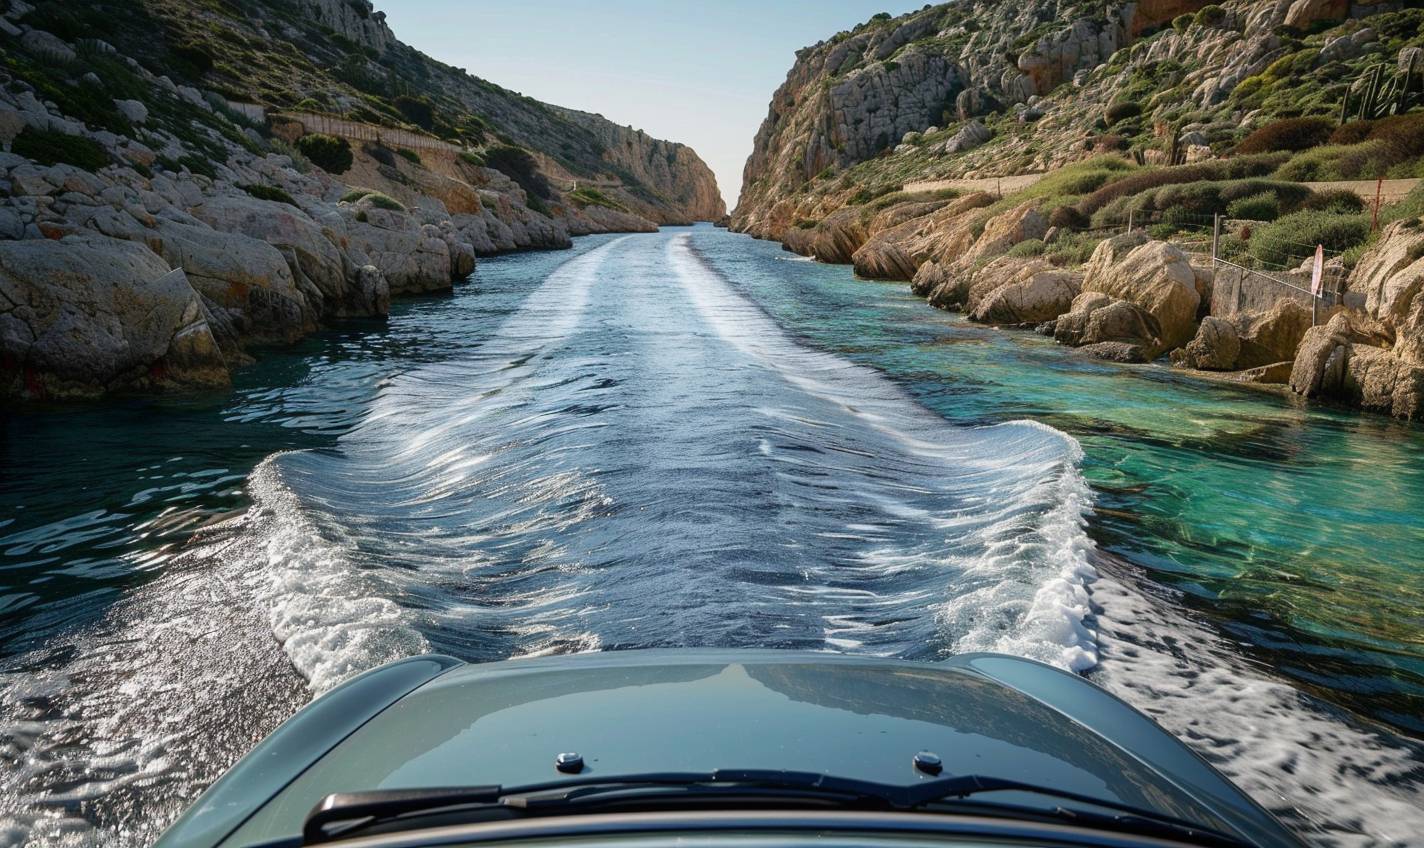 サルデーニャの海岸沿いを走る車を描いたリアルな画像を生成してください。画像は晴れた日に透明な海水を表現している必要があります。車の画像がはっきりと目立つようにしてください。ありがとうございます！